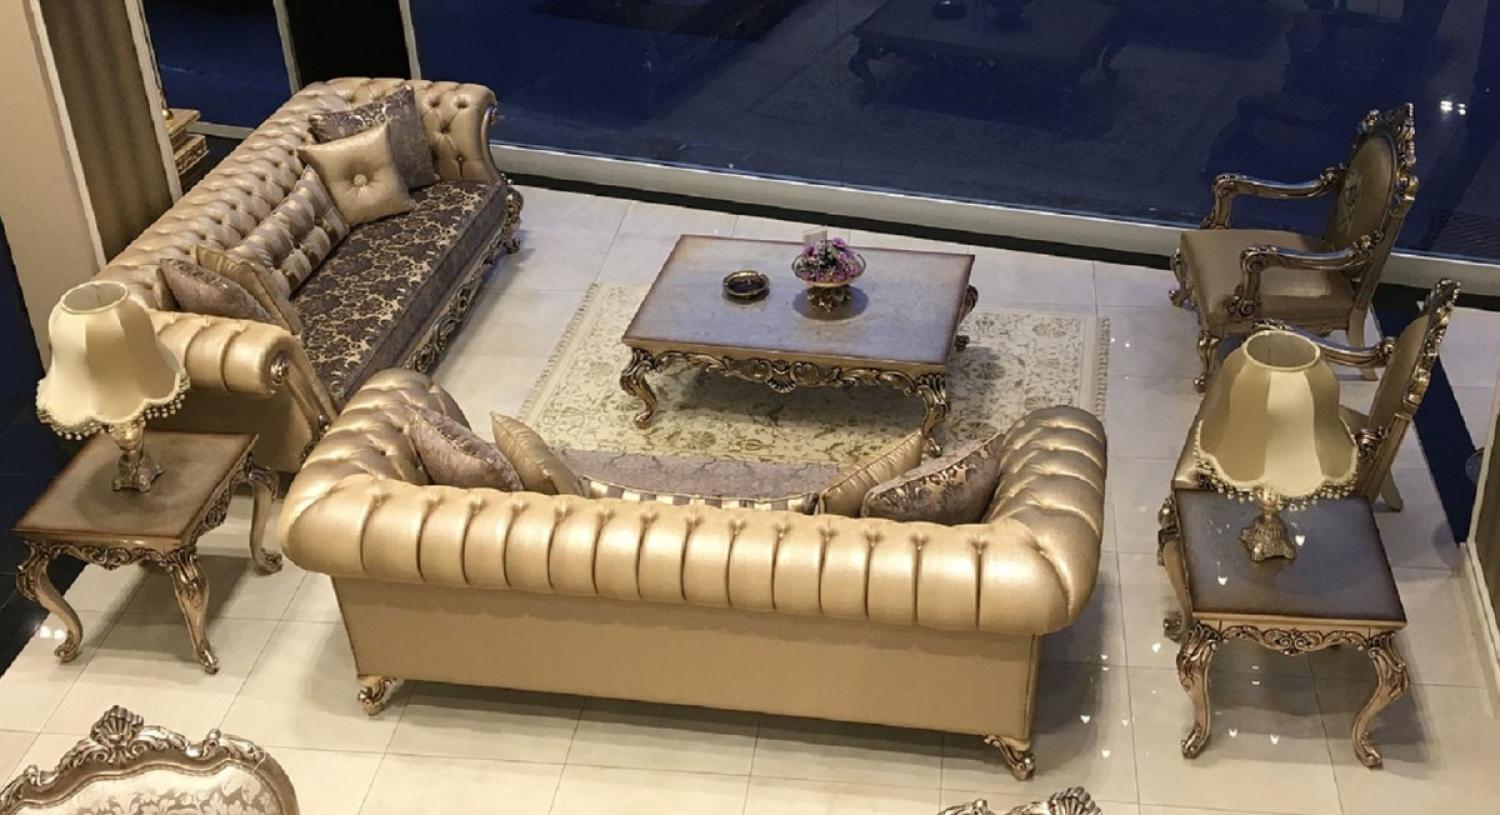 Casa Padrino Luxus Barock Wohnzimmer Set - 2 Sofas & 2 Sessel & 1 Couchtisch & 2 Beistelltische - Handgefertigte Wohnzimmer Möbel im Barockstil - Edel & Prunkvoll Bild 1